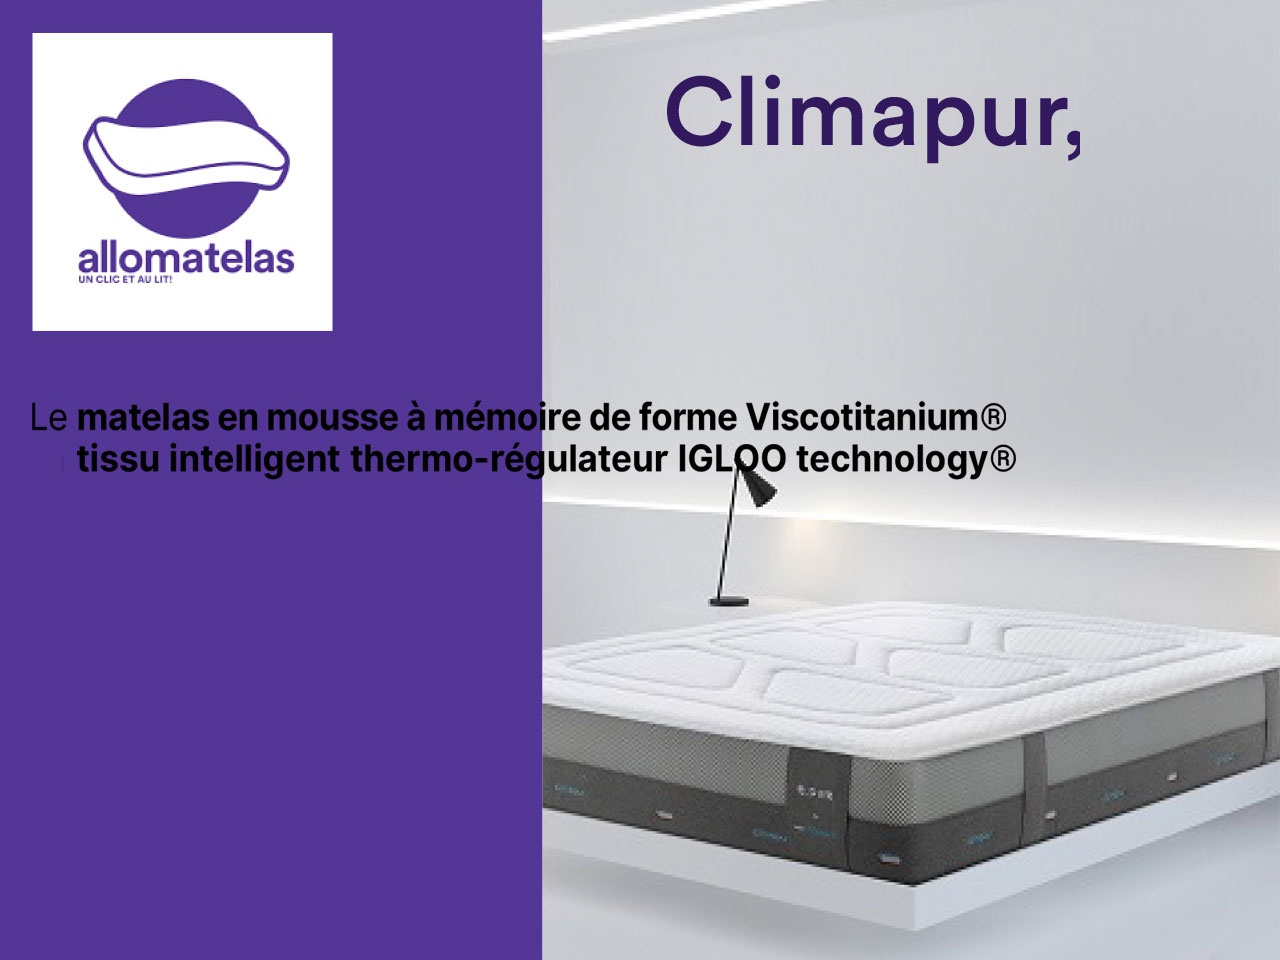 Allomatelas présente la gamme Climapur, dotée de la technologie Viscotitanium®.